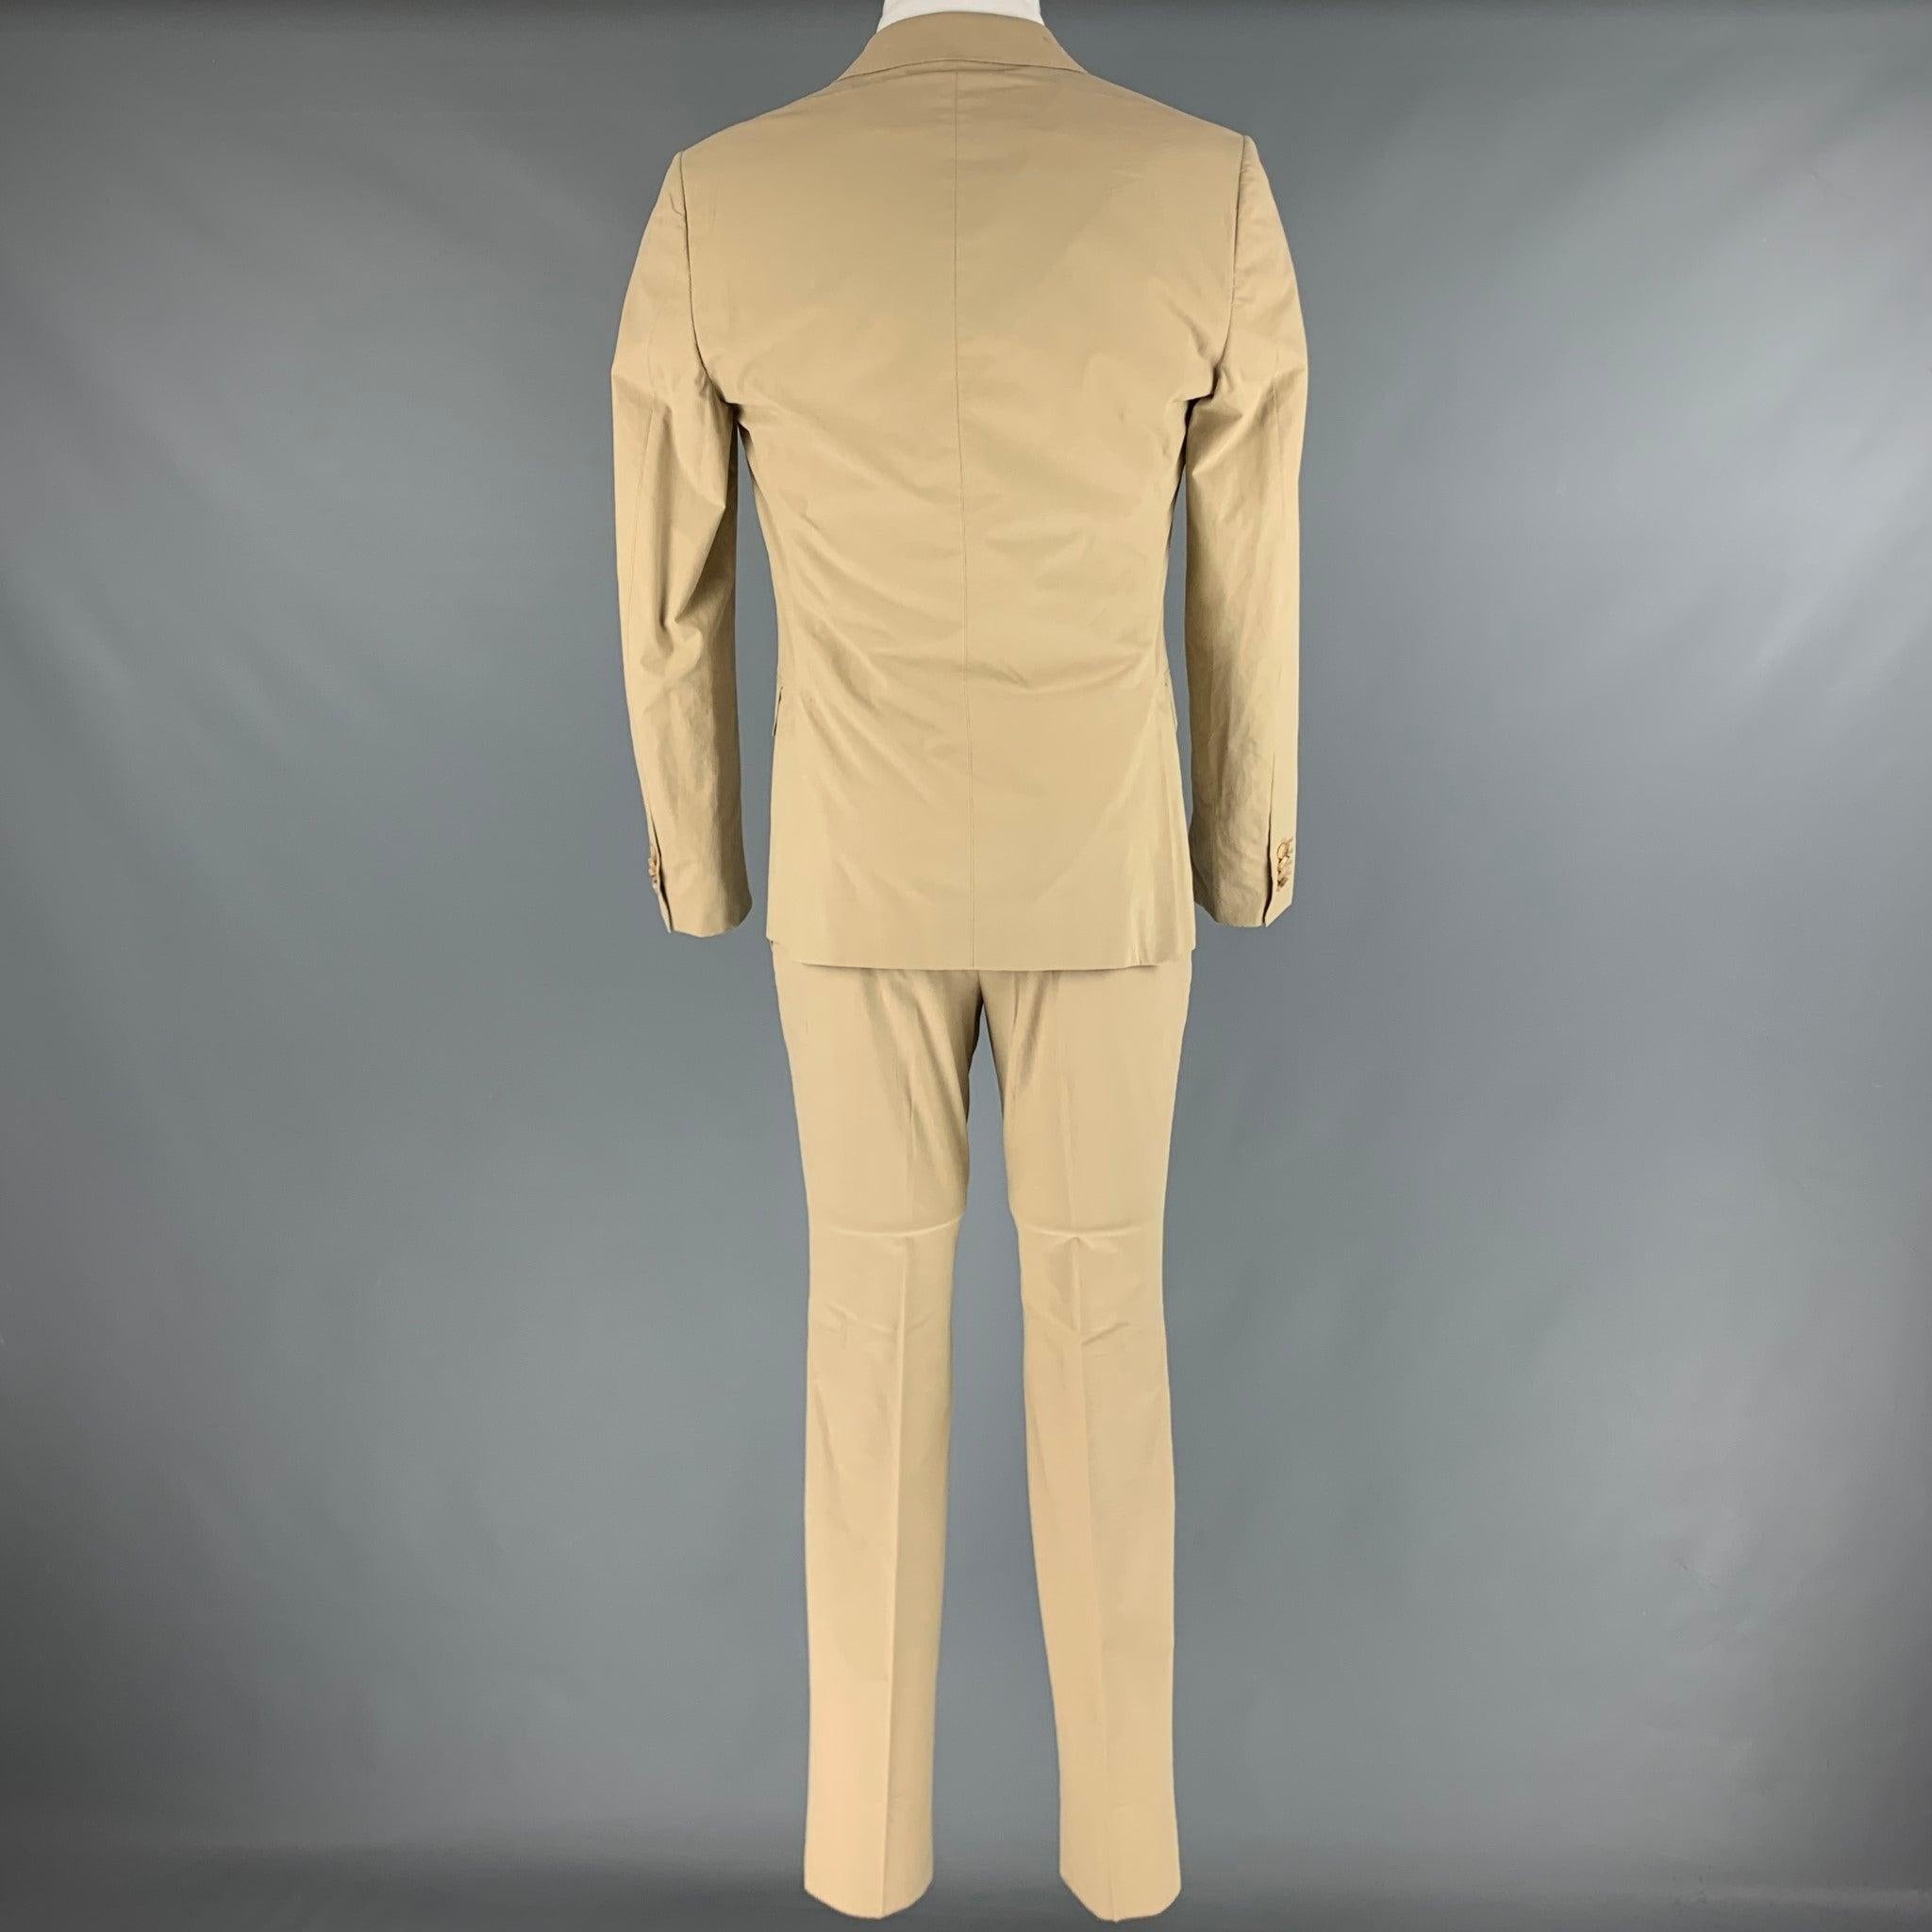 Z ZEGNA Size 36 Khaki Cotton Notch Lapel Suit In Excellent Condition For Sale In San Francisco, CA